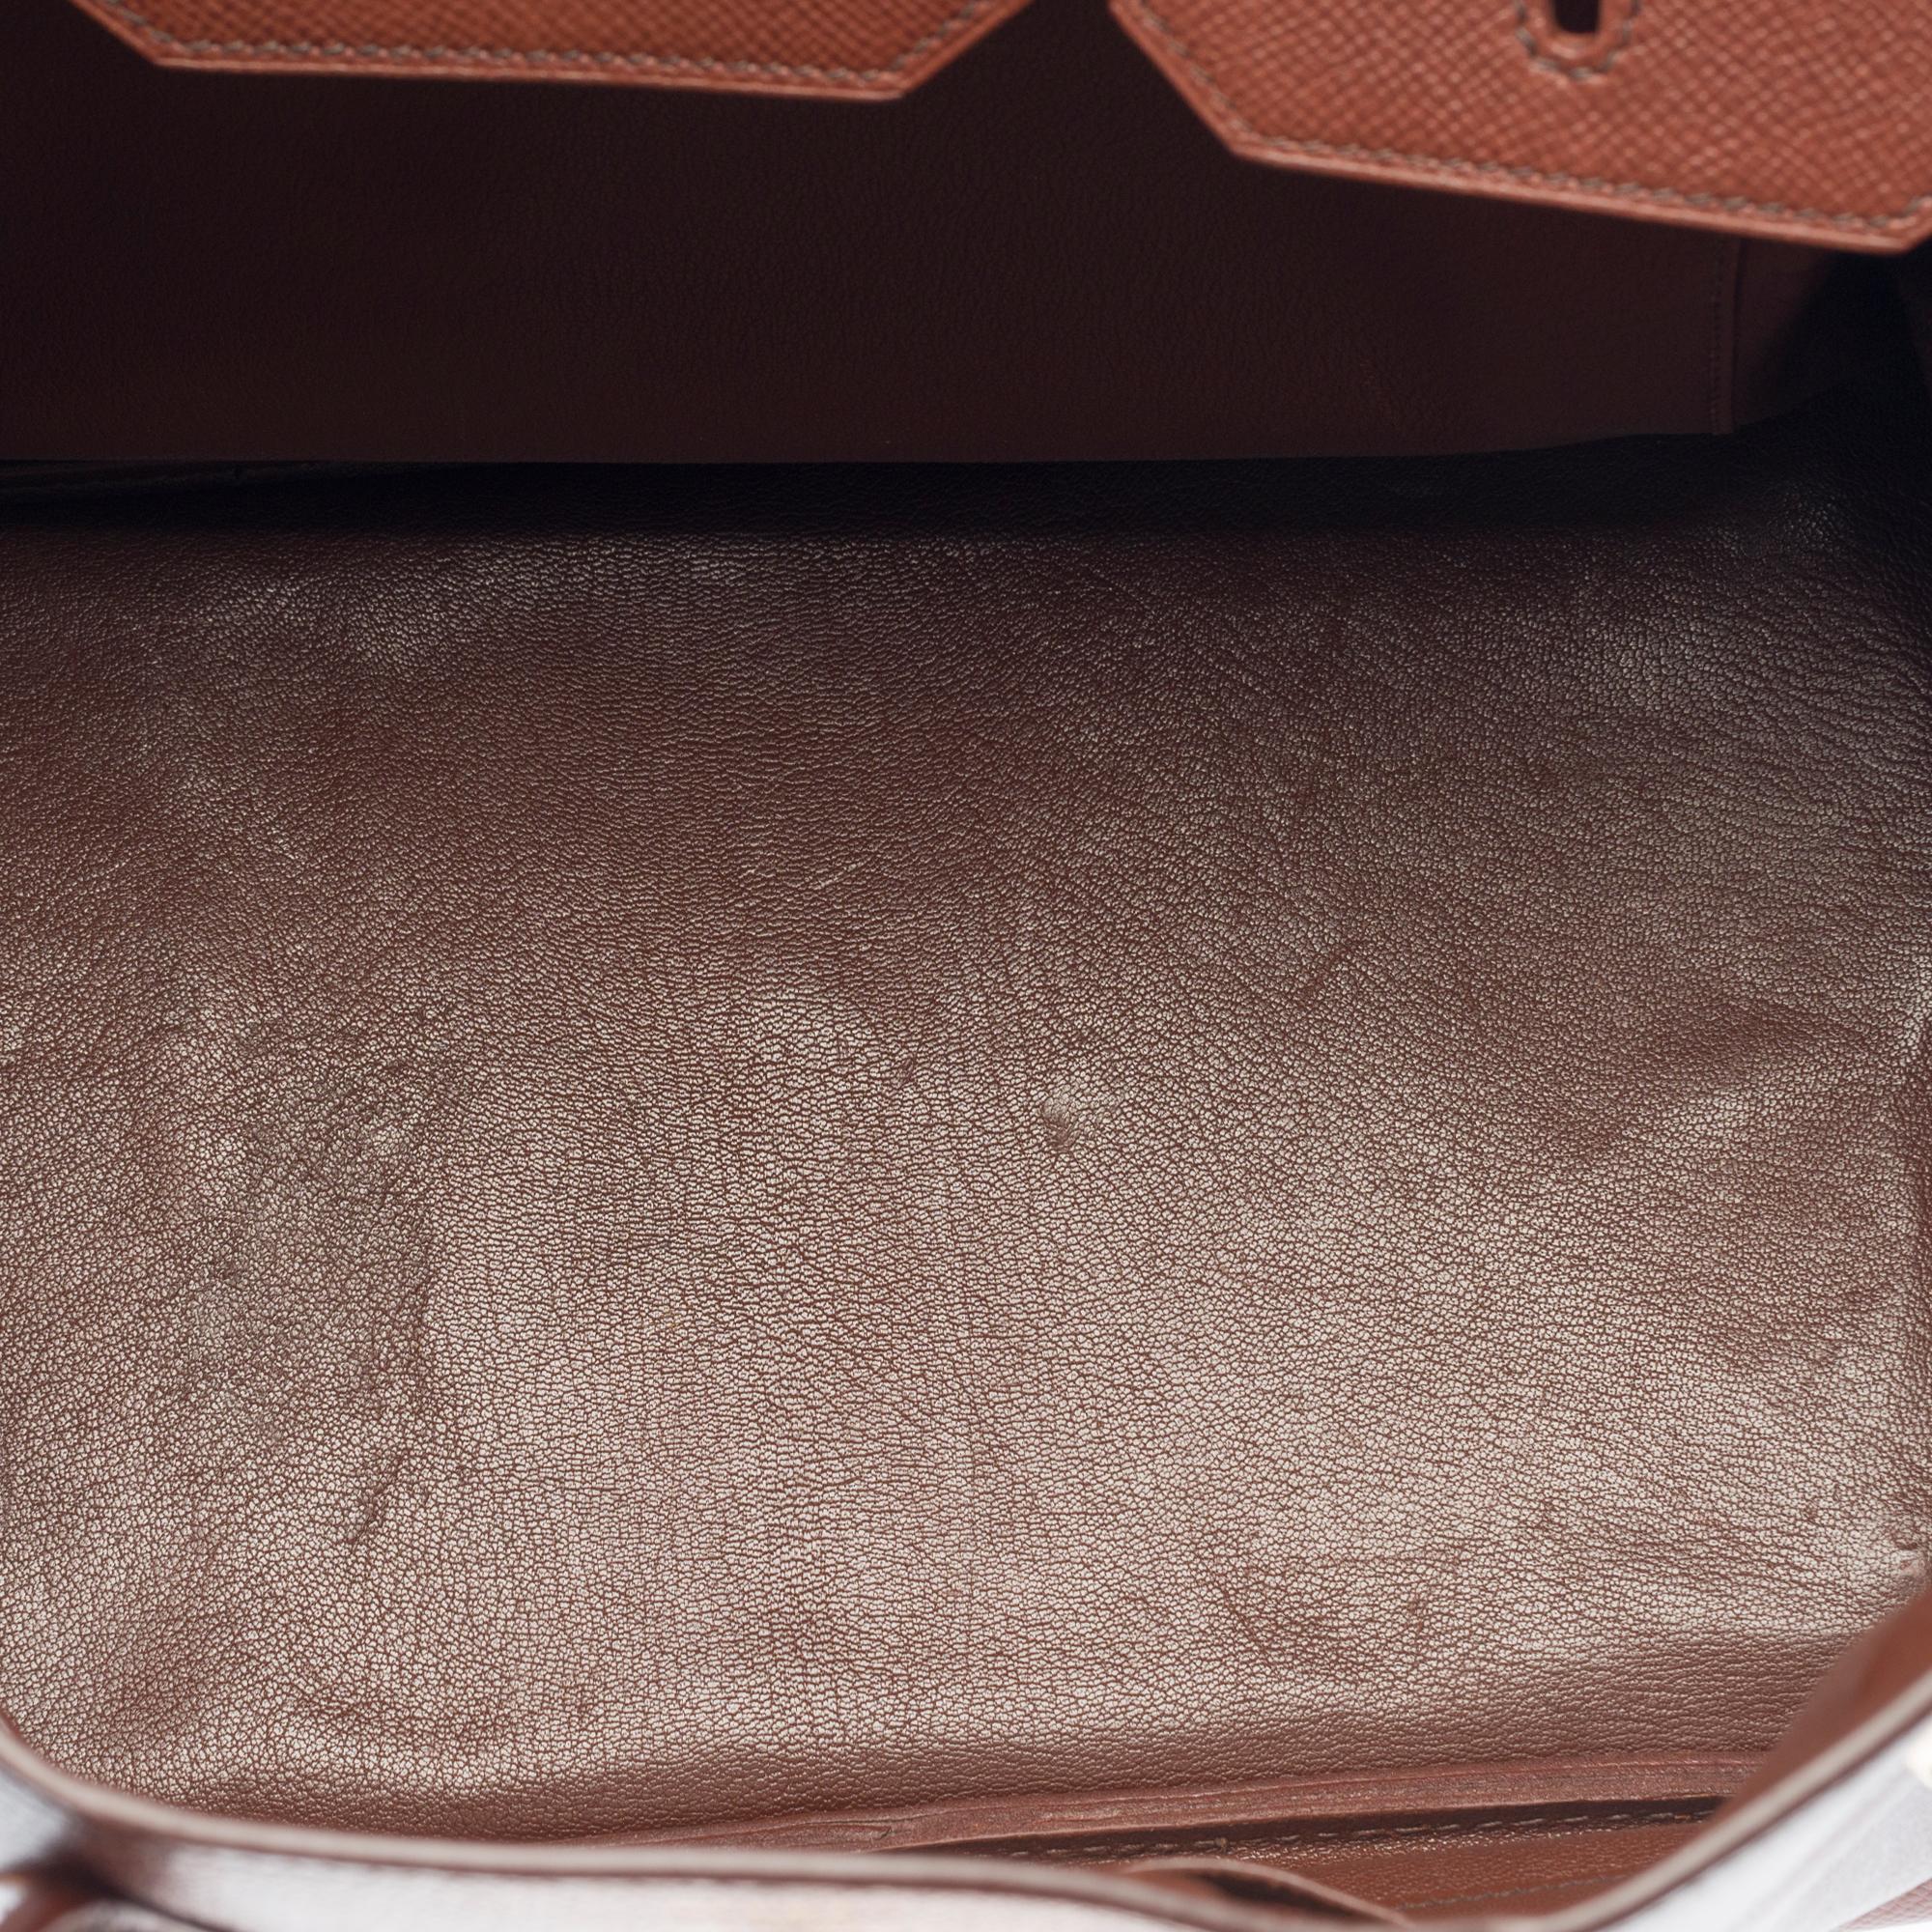 Women's or Men's Hermès Birkin 35 handbag in brown Courchevel leather with gold hardware !